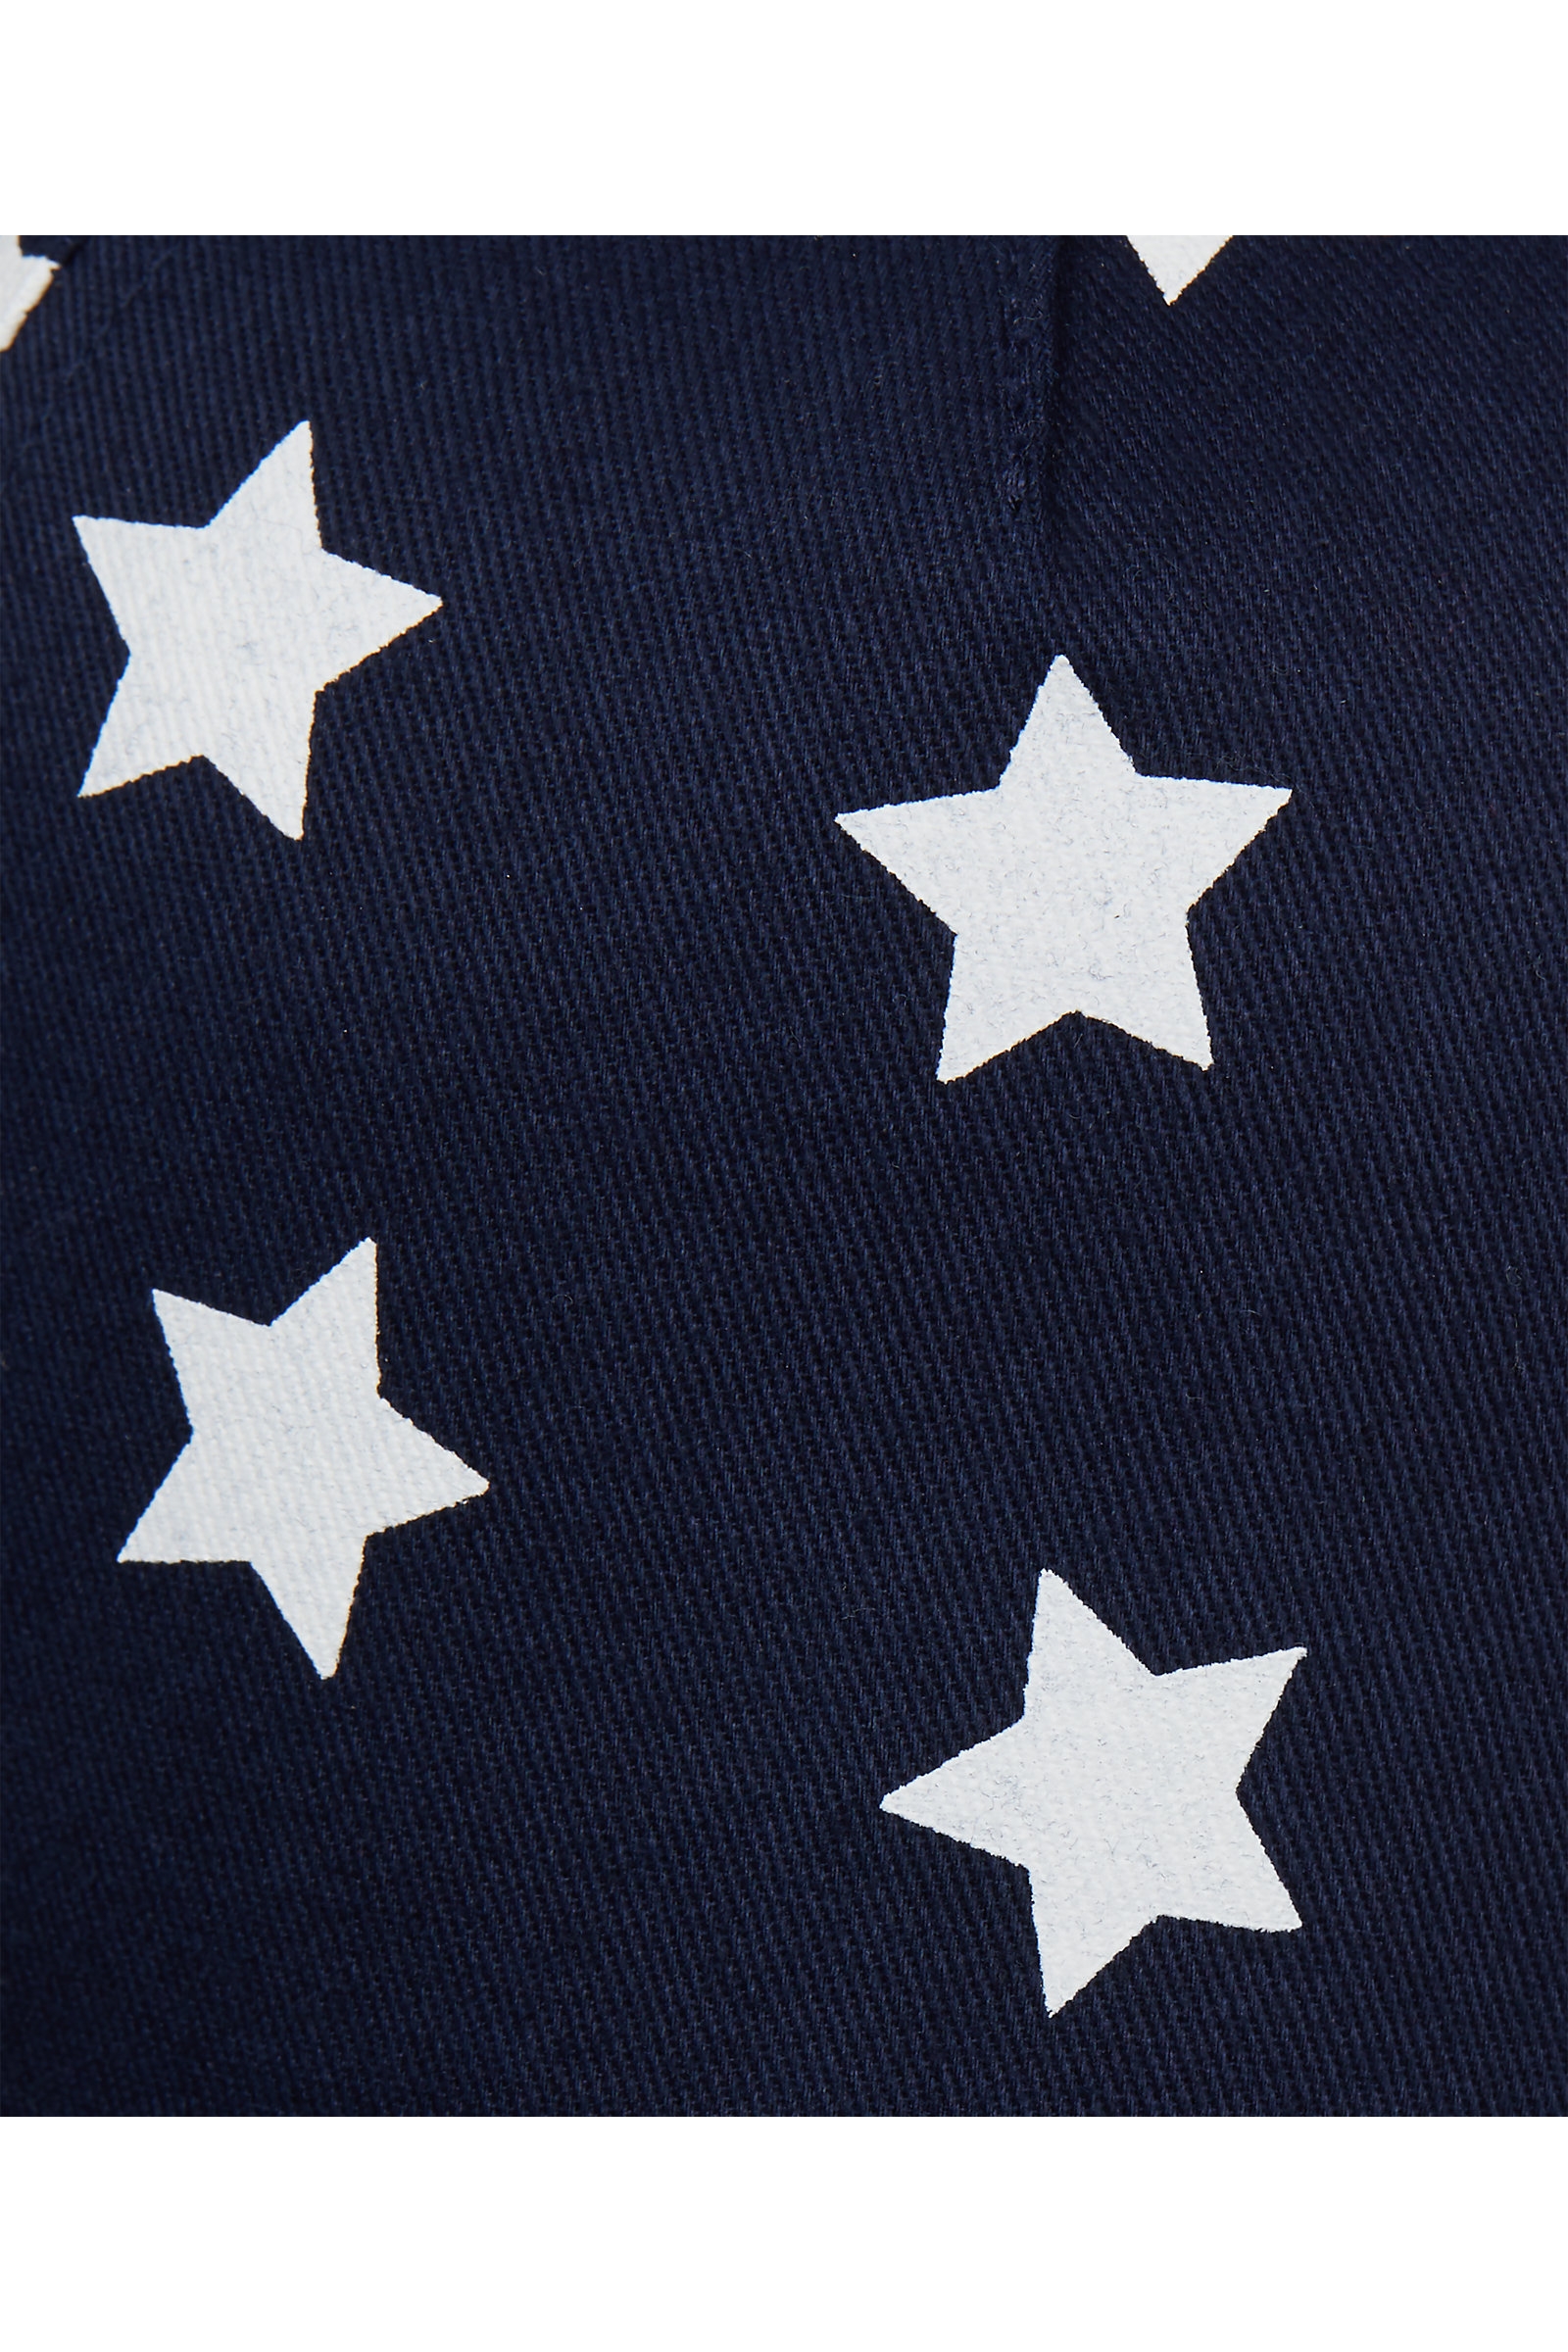 Boys Cap Star Print - Navy